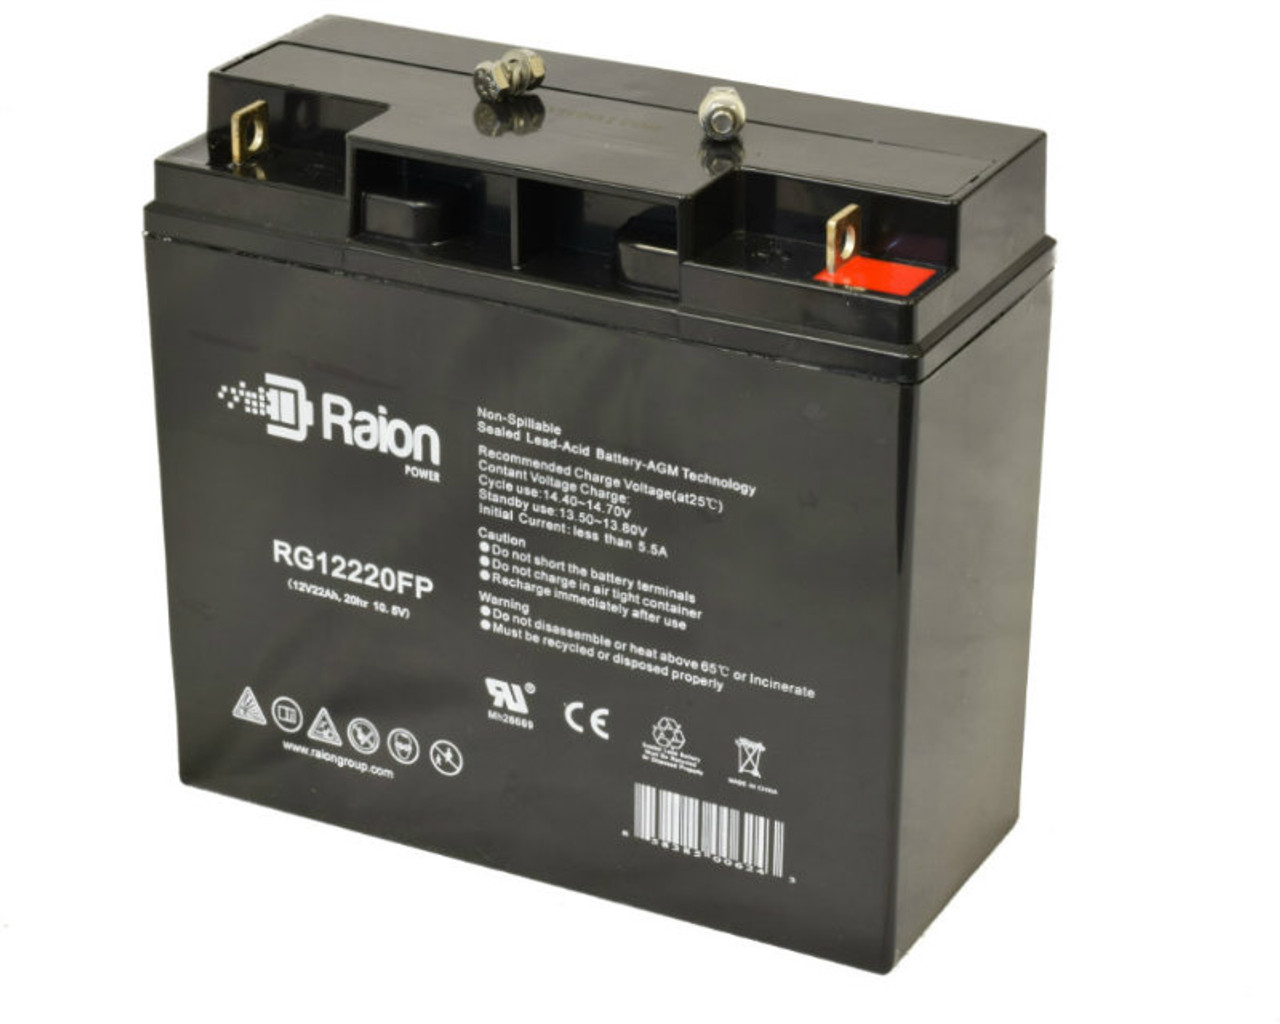 Raion Power RG12220FP 12V 22Ah Lead Acid Wheelchair Battery for ActiveCare Medical LMR41221